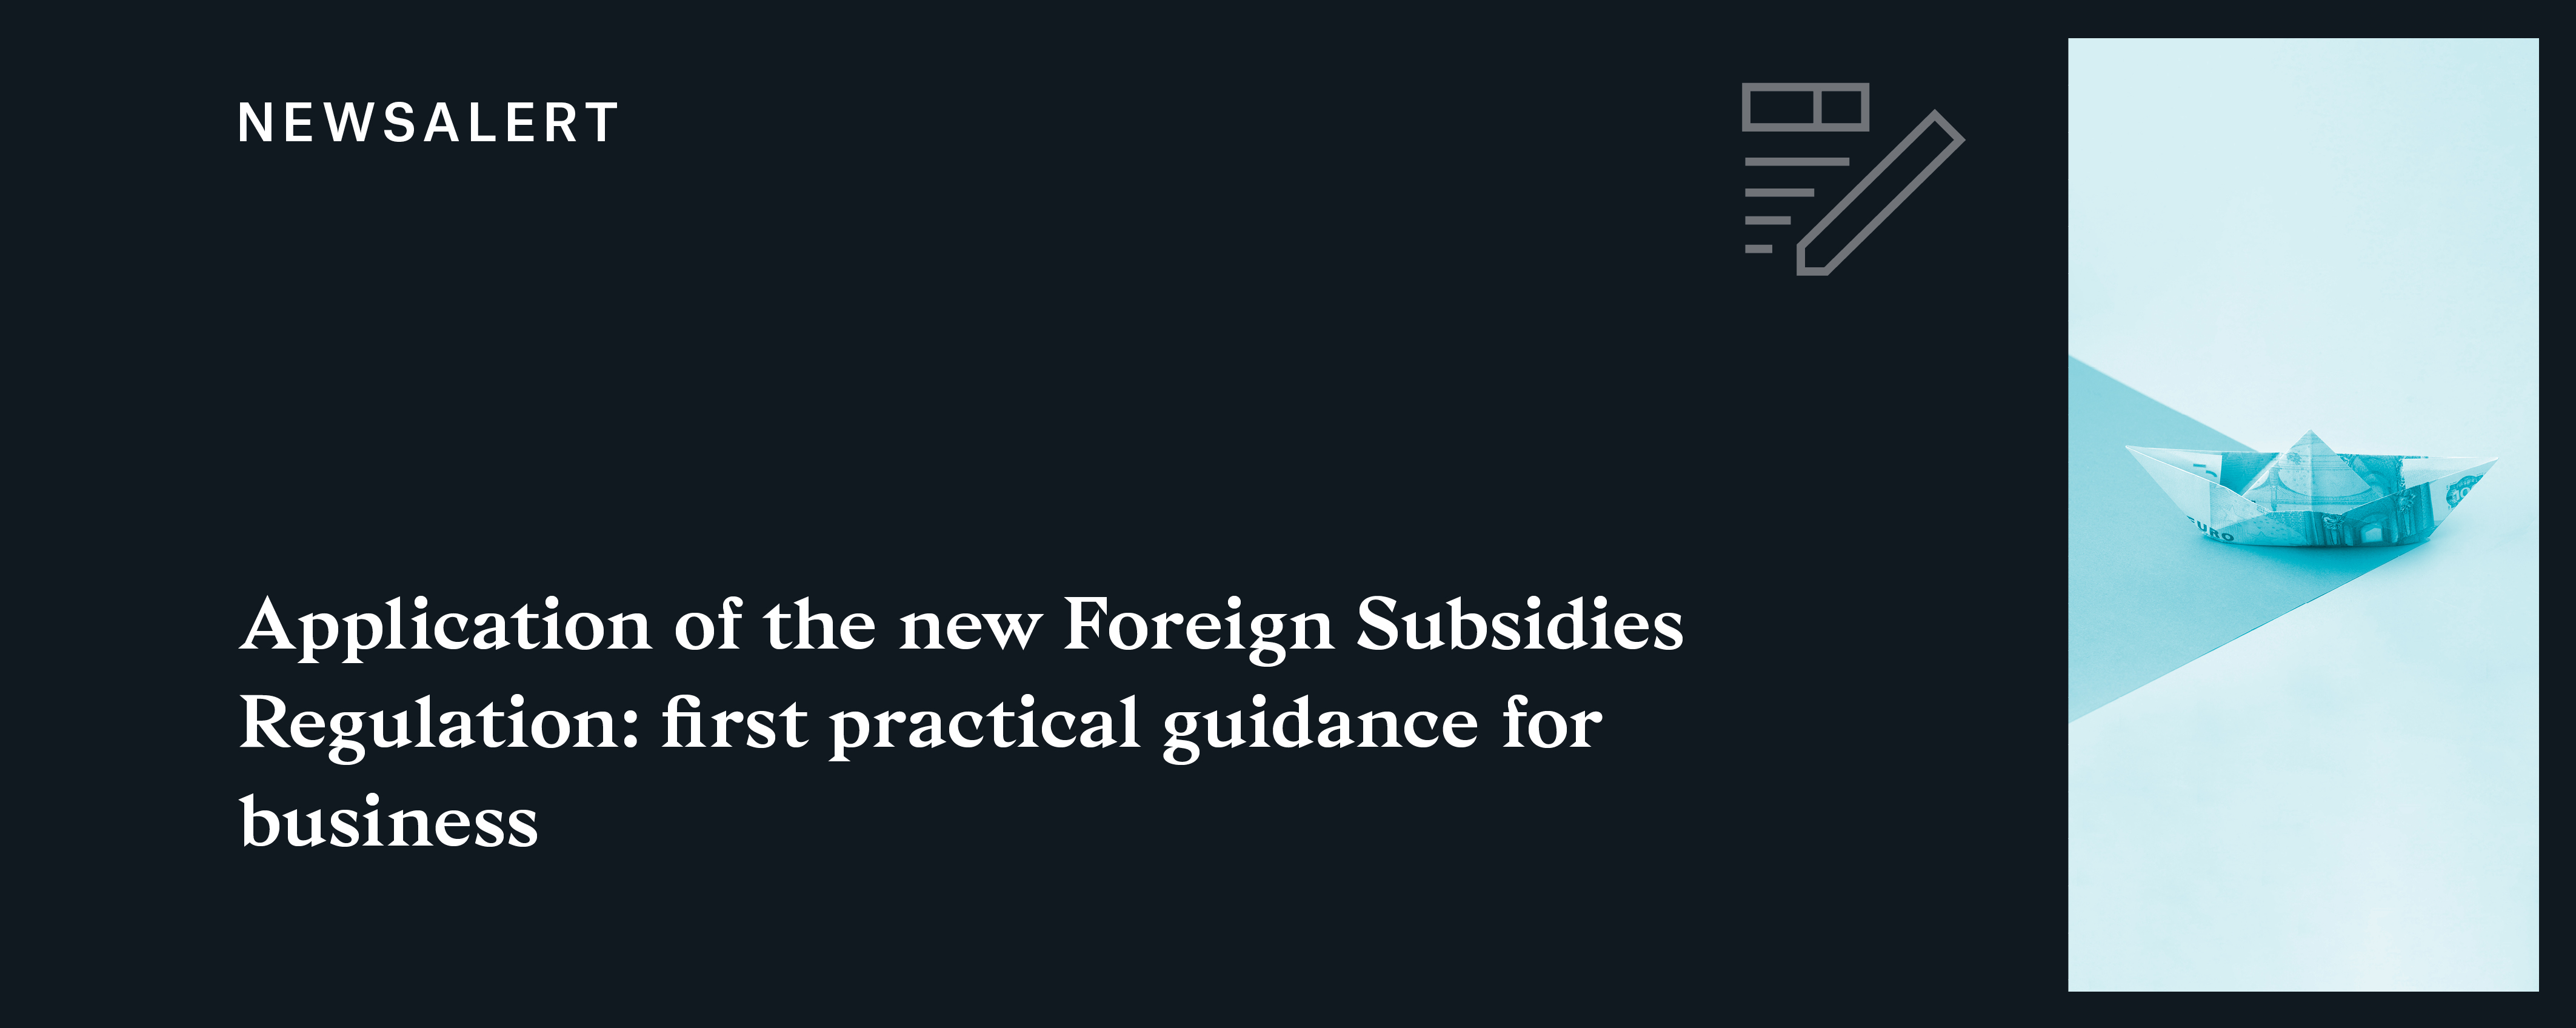 Newsalert | Foreign Subsidies